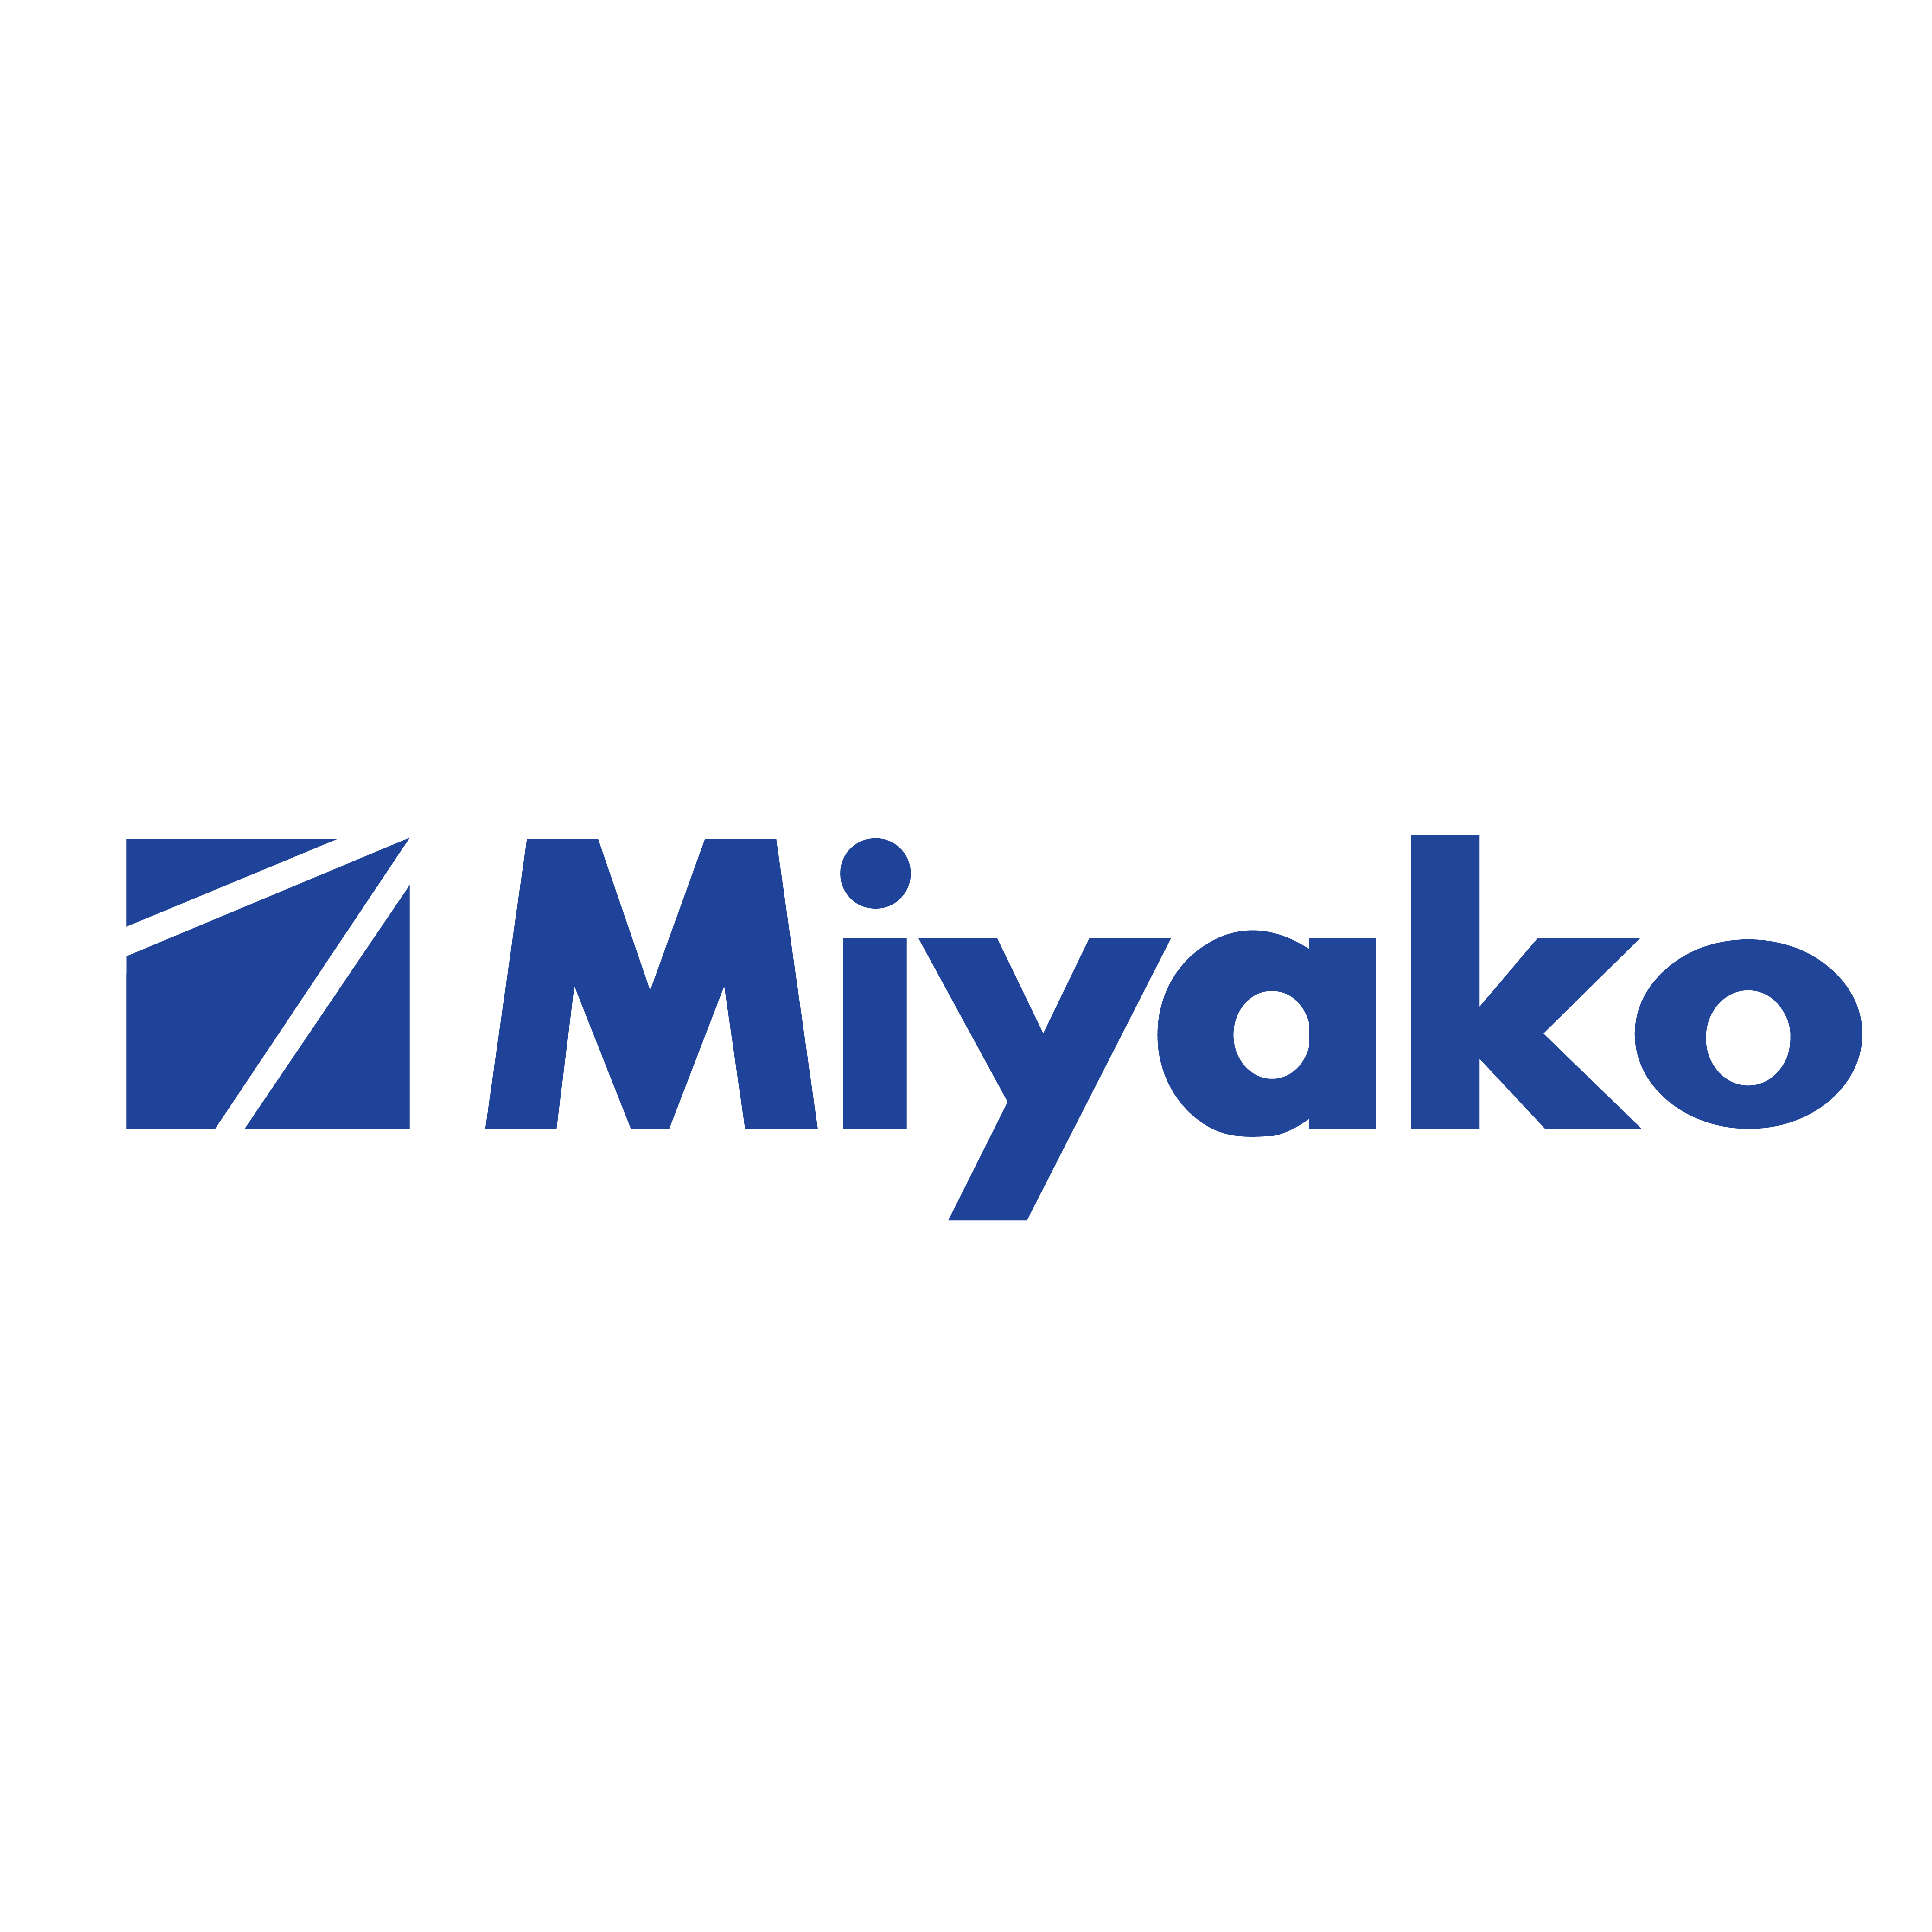 Miyako Official Store